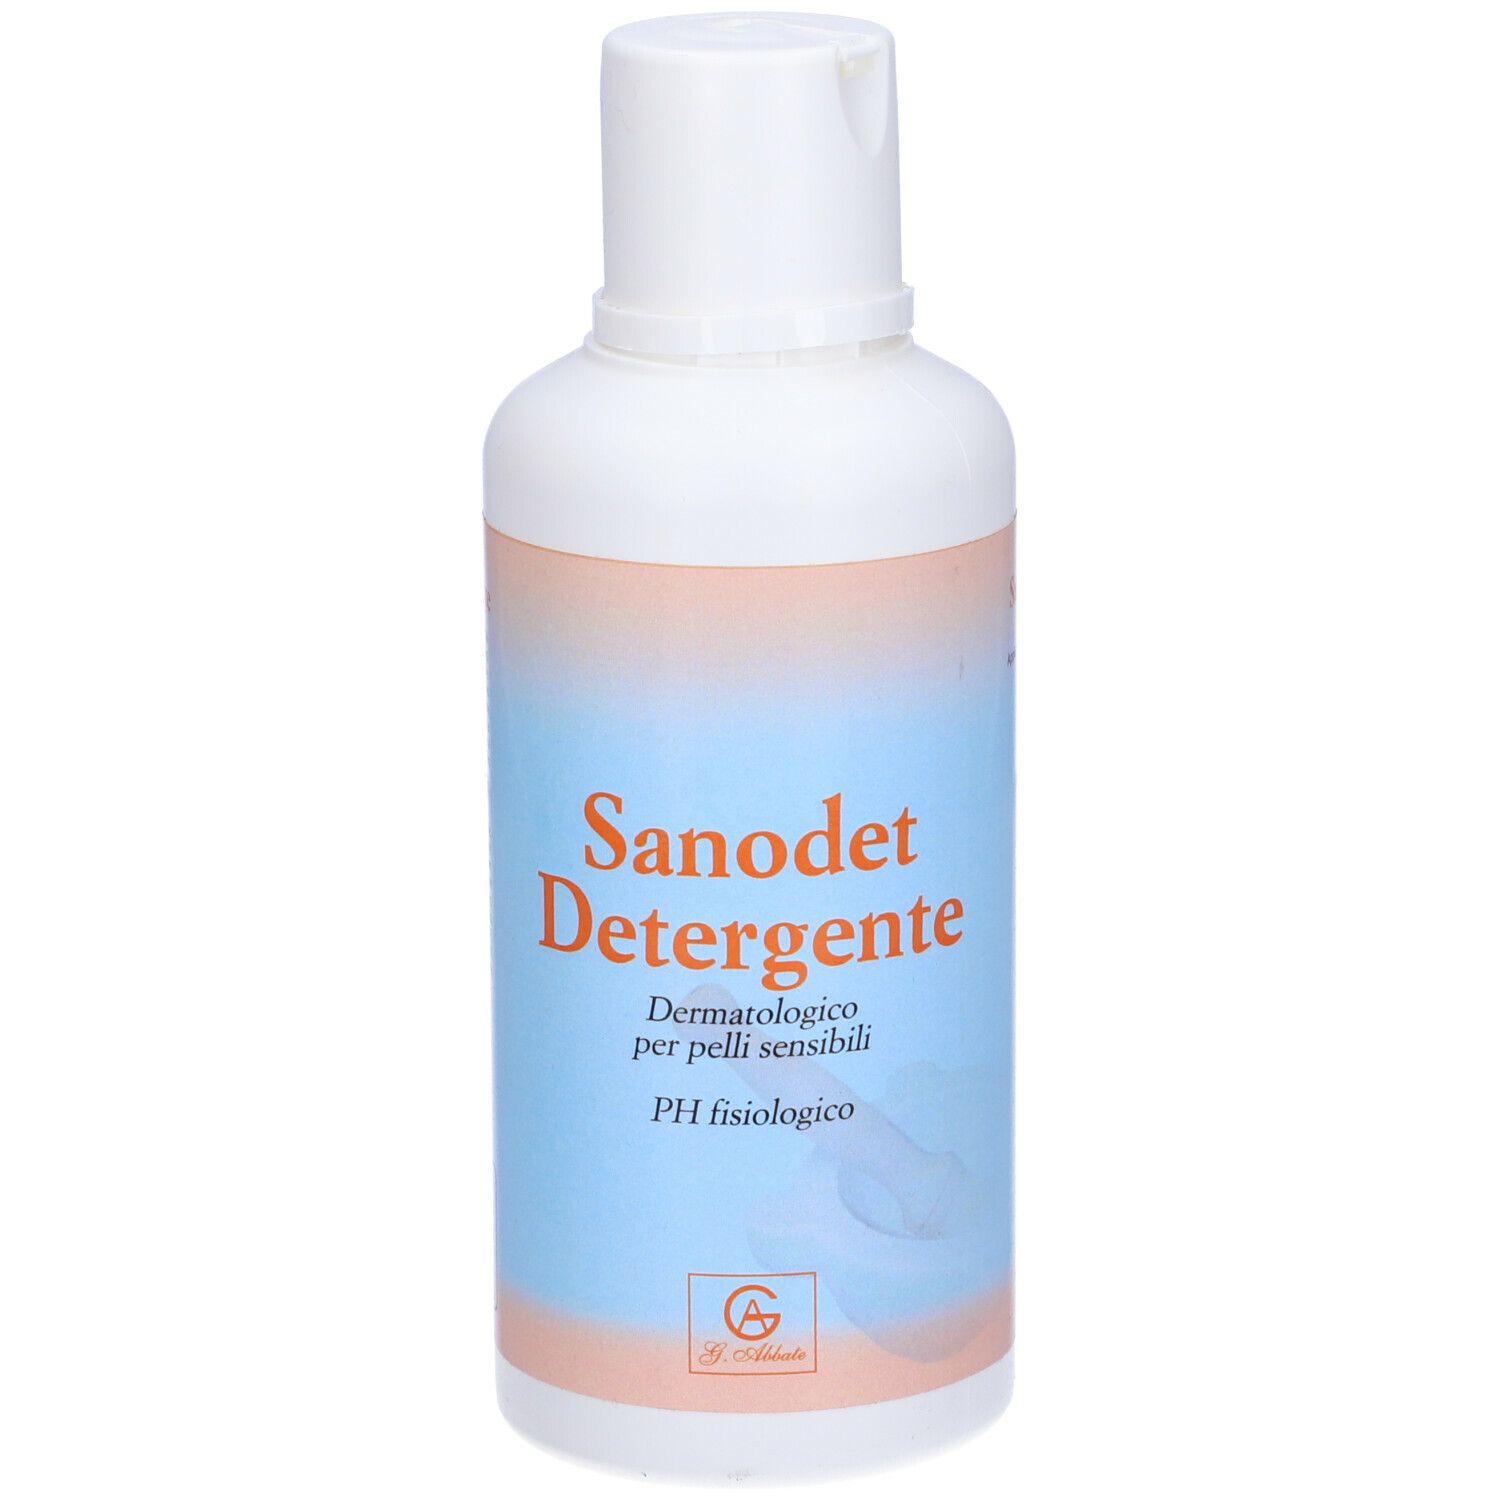 Image of Sanodet Detergente G.Abbate 500ml